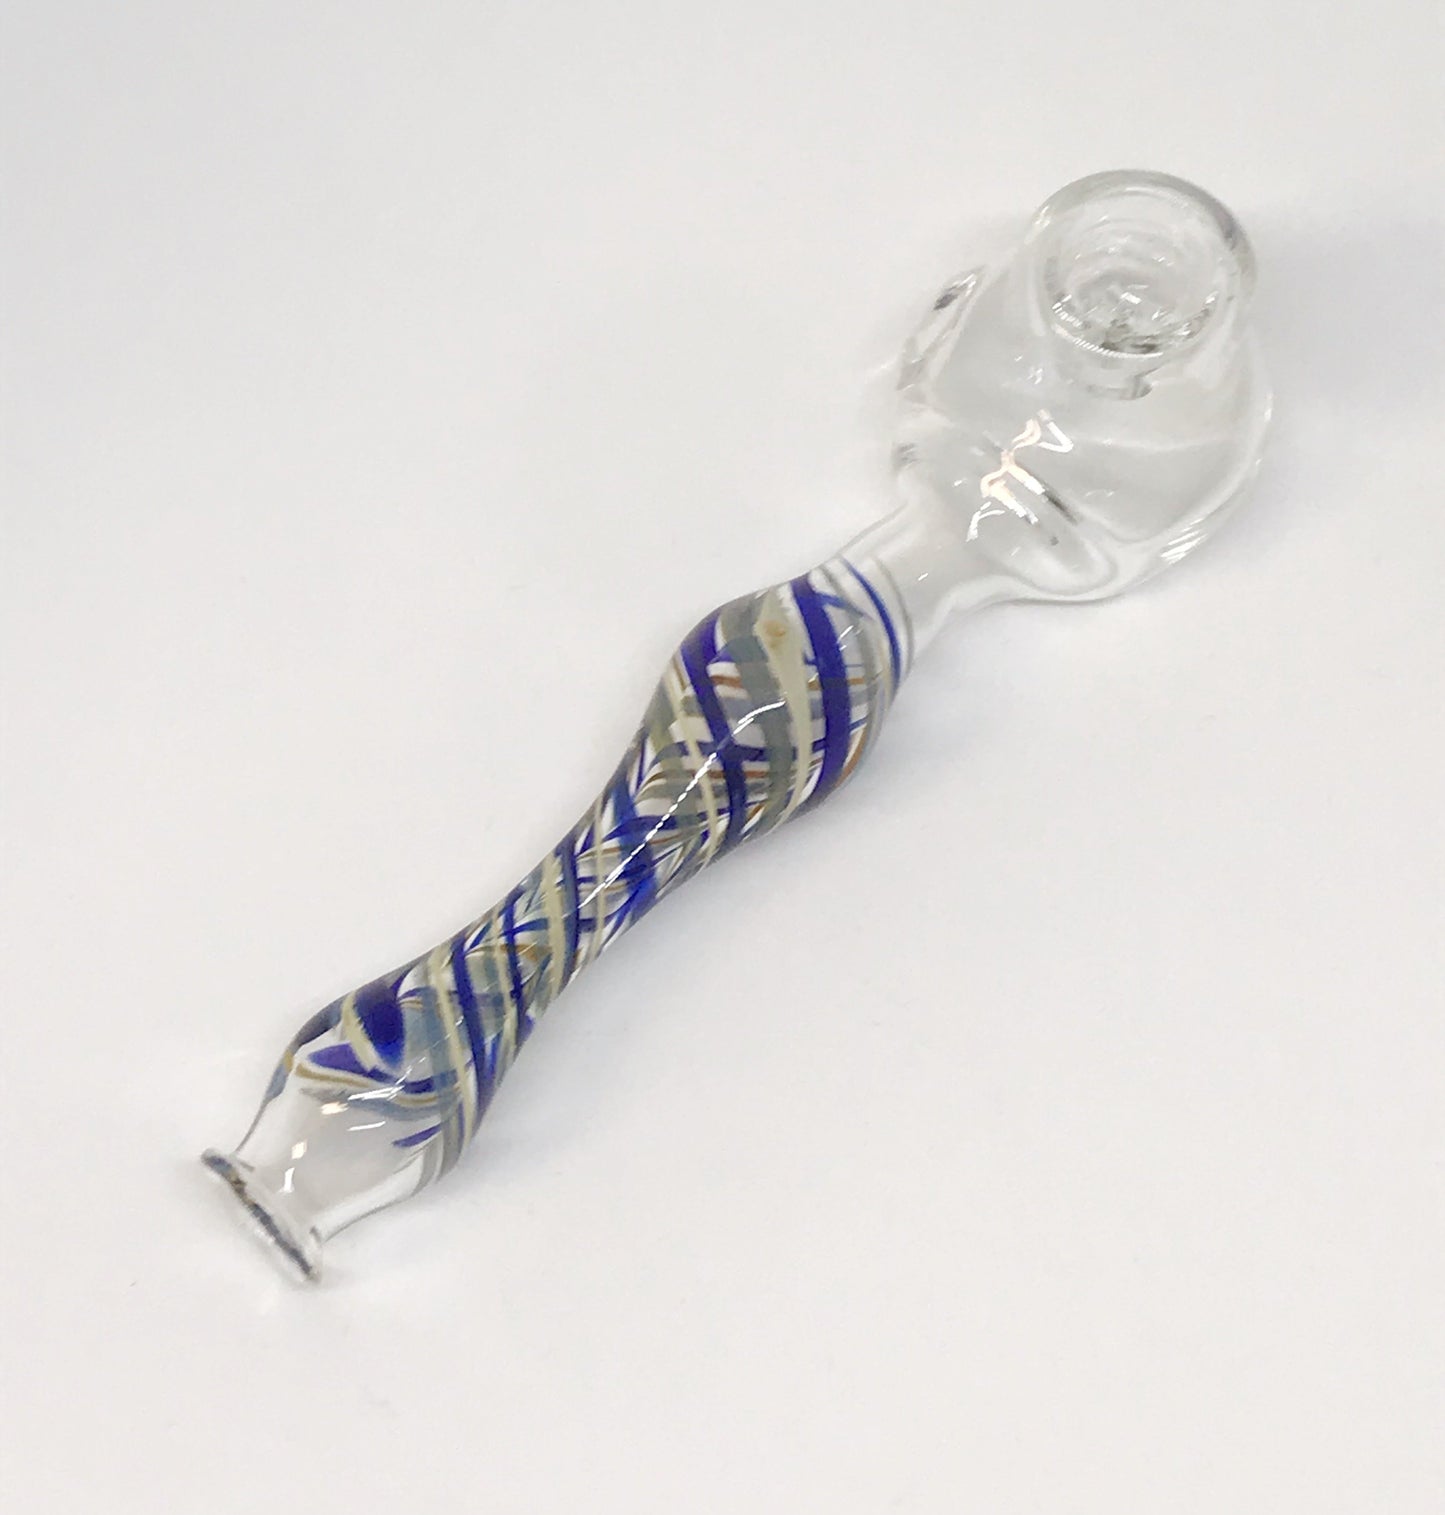 Glass Alchemy Pipe